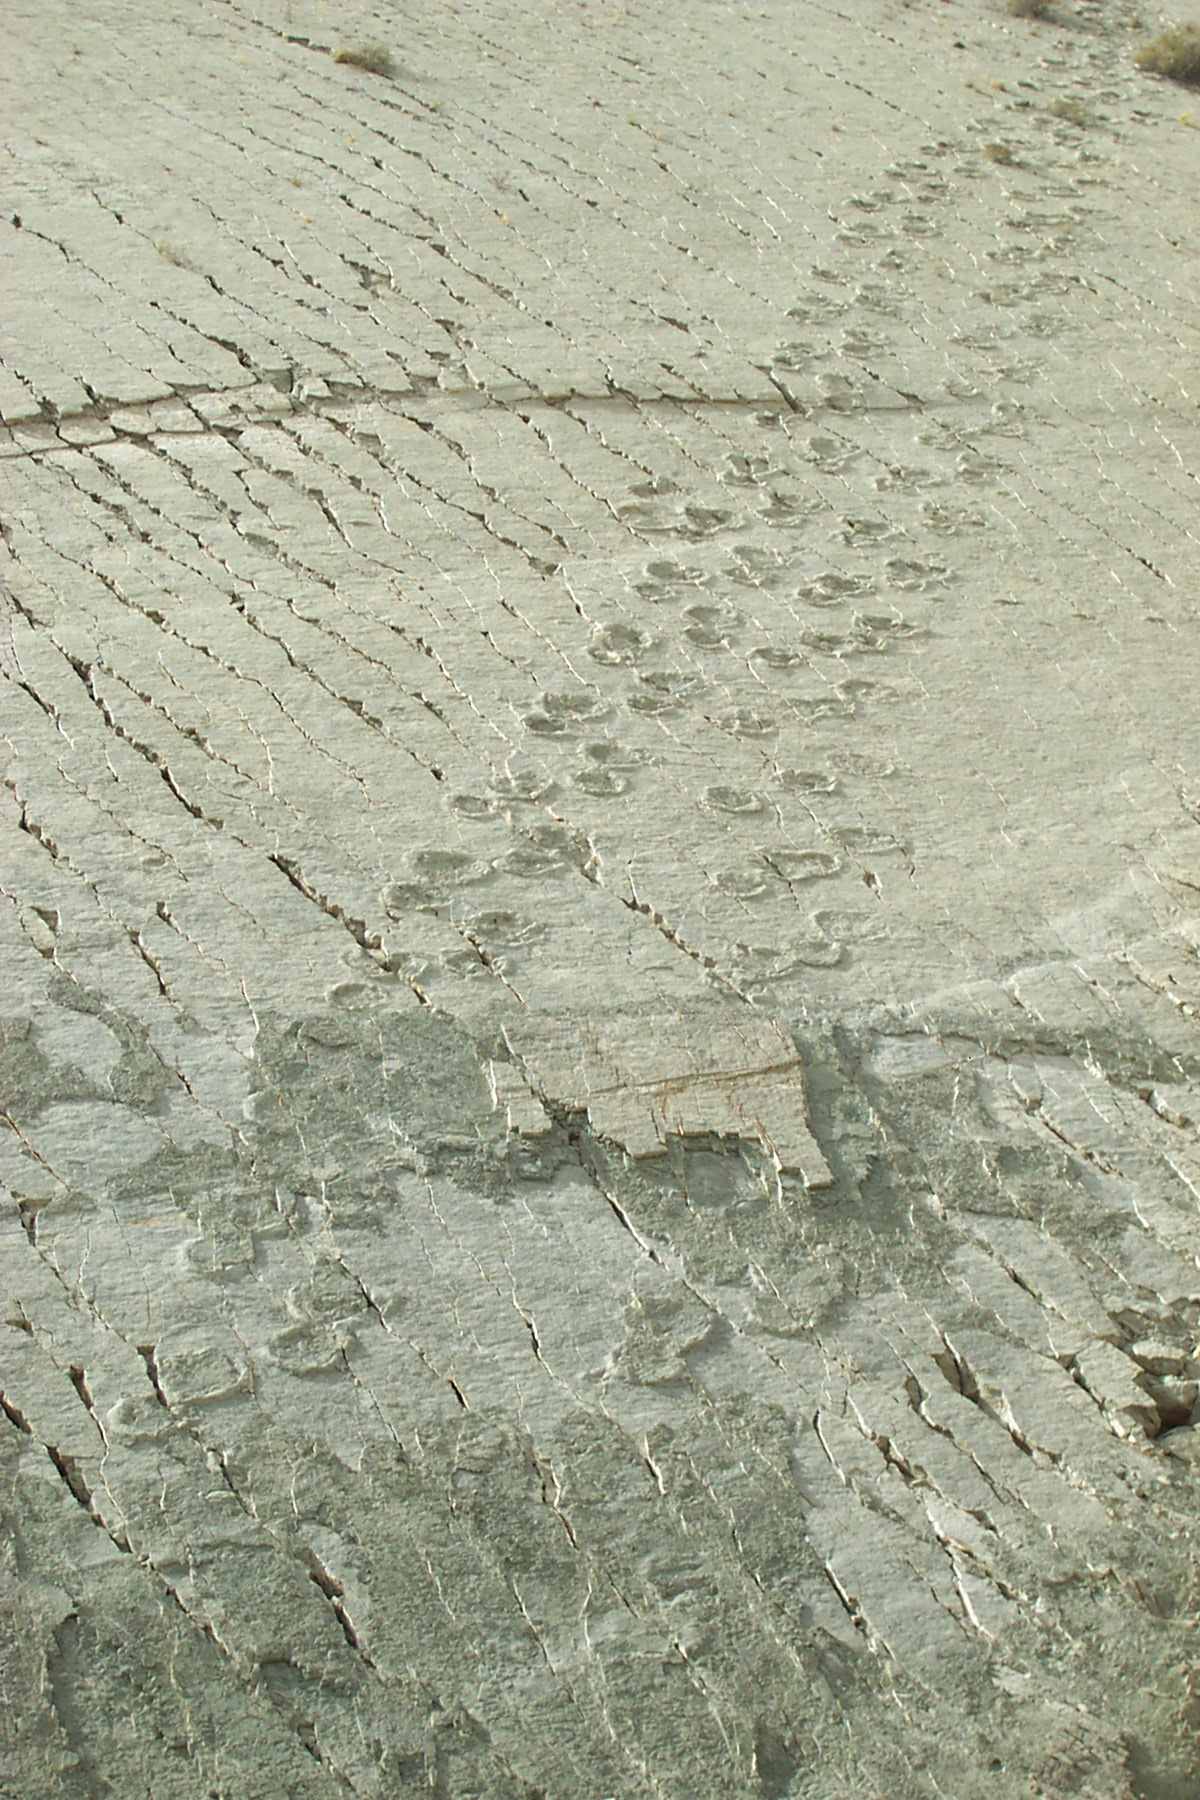 Impronte sul muro: i dinosauri stavano davvero scalando le scogliere in Bolivia? 4